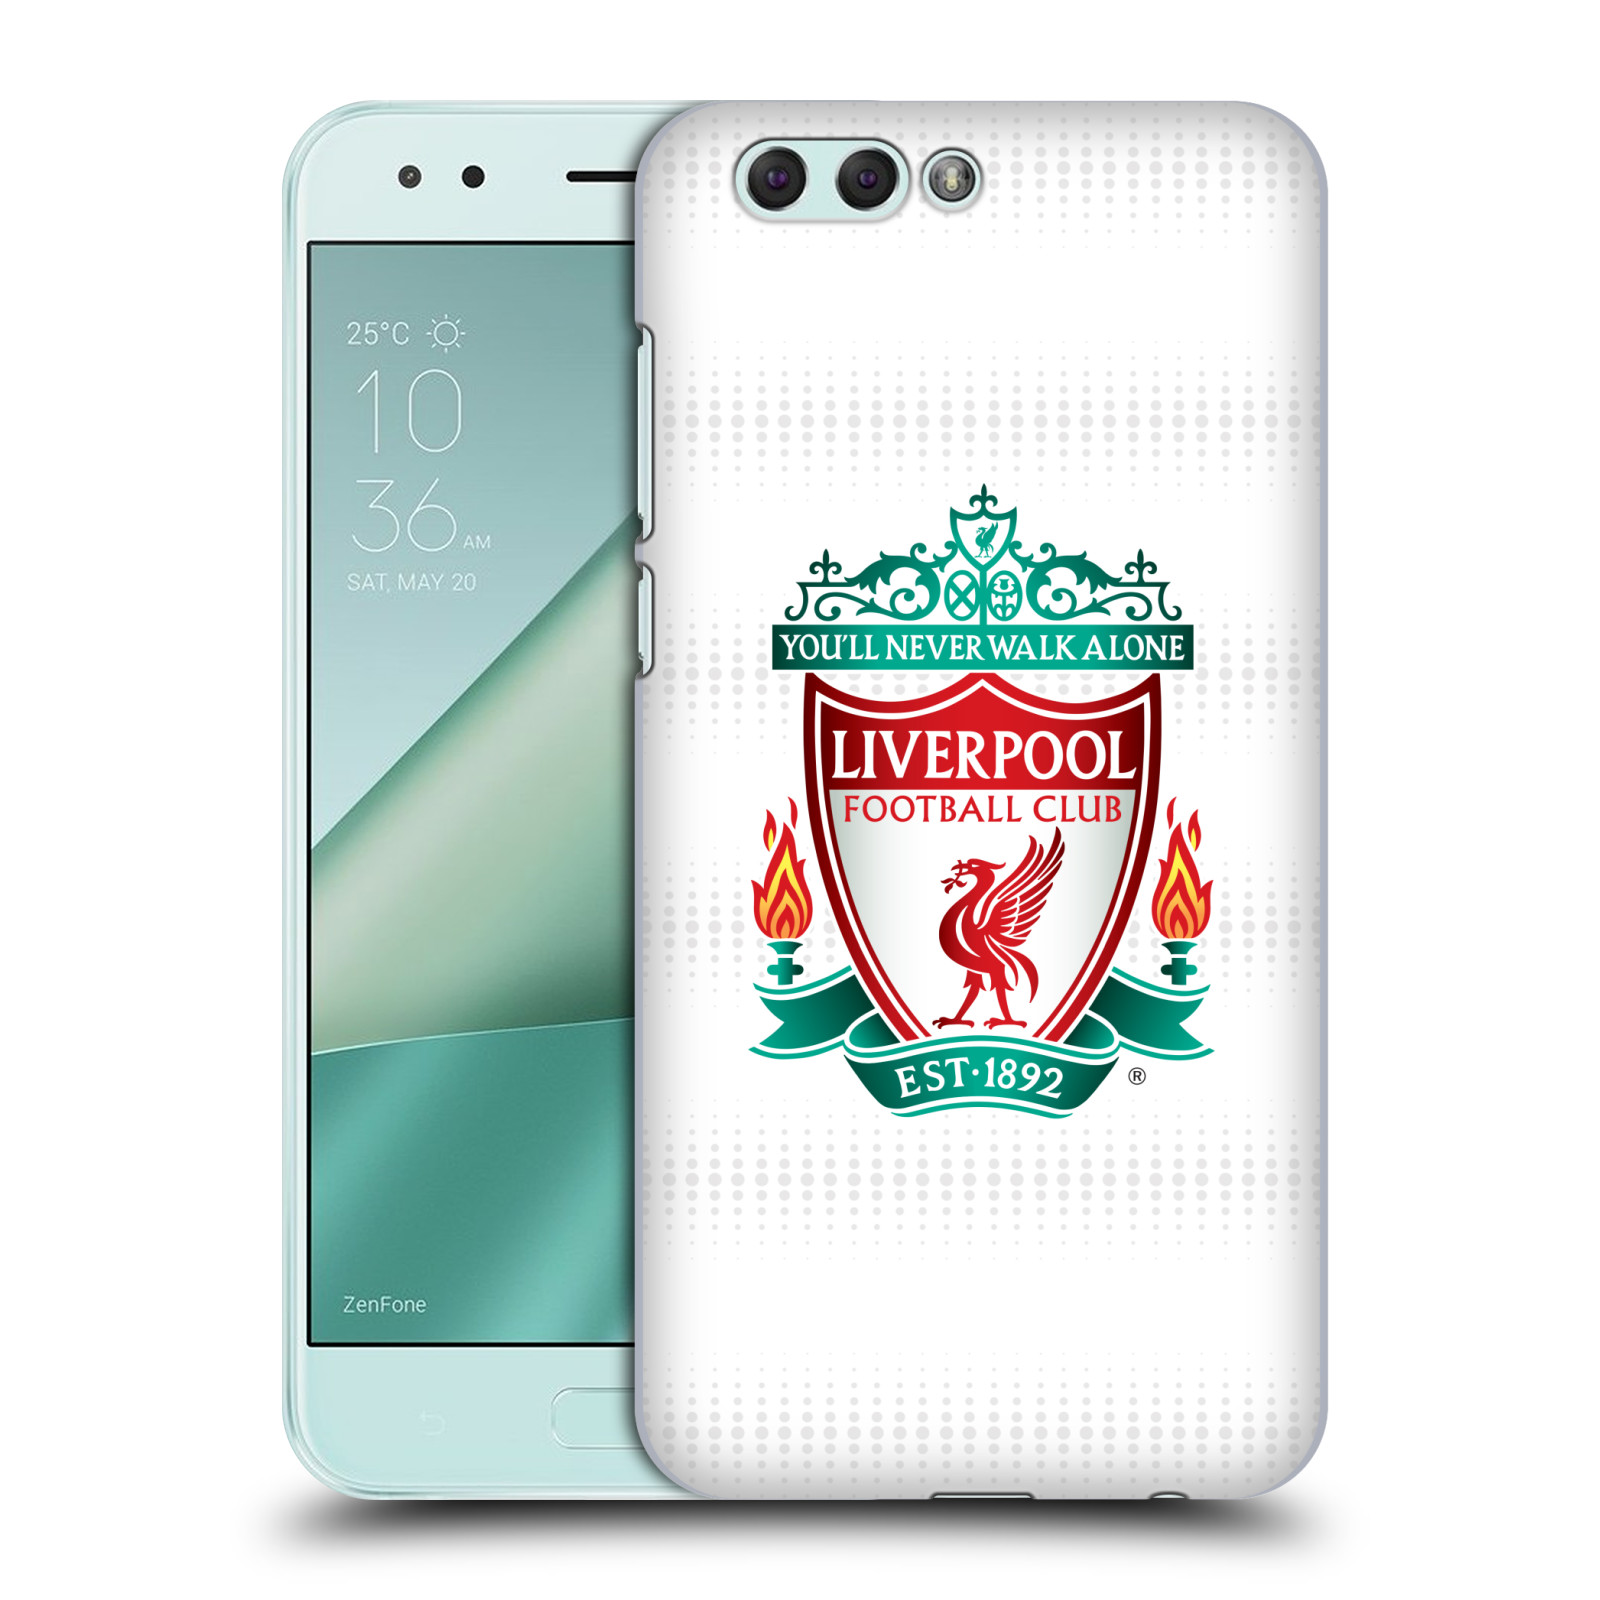 HEAD CASE plastový obal na mobil Asus Zenfone 4 ZE554KL Fotbalový klub Liverpool barevný znak bílé pozadí s tečkami